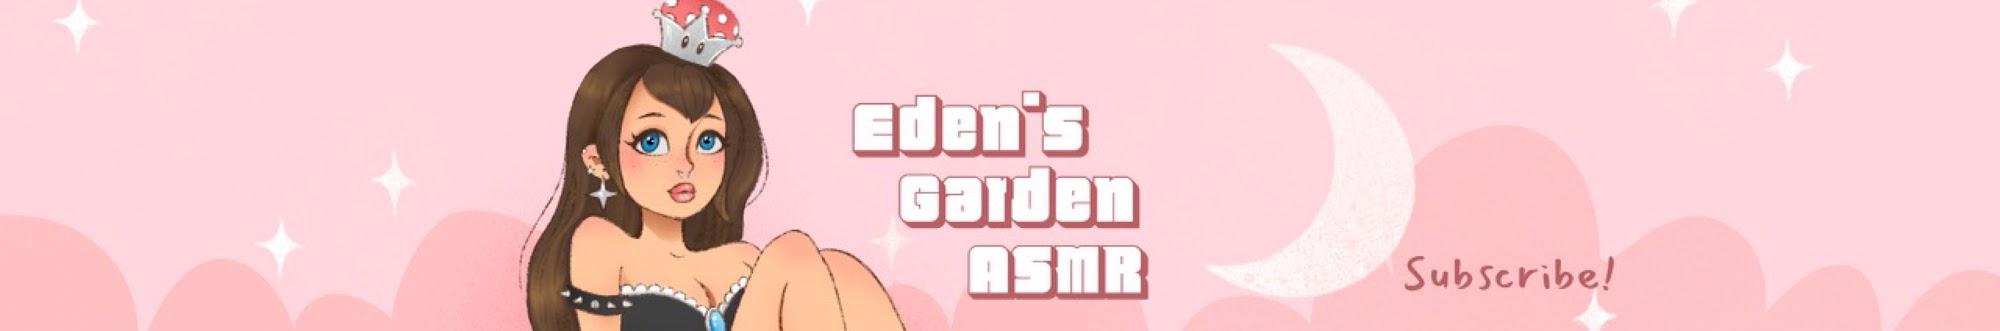 Eden's Garden ASMR